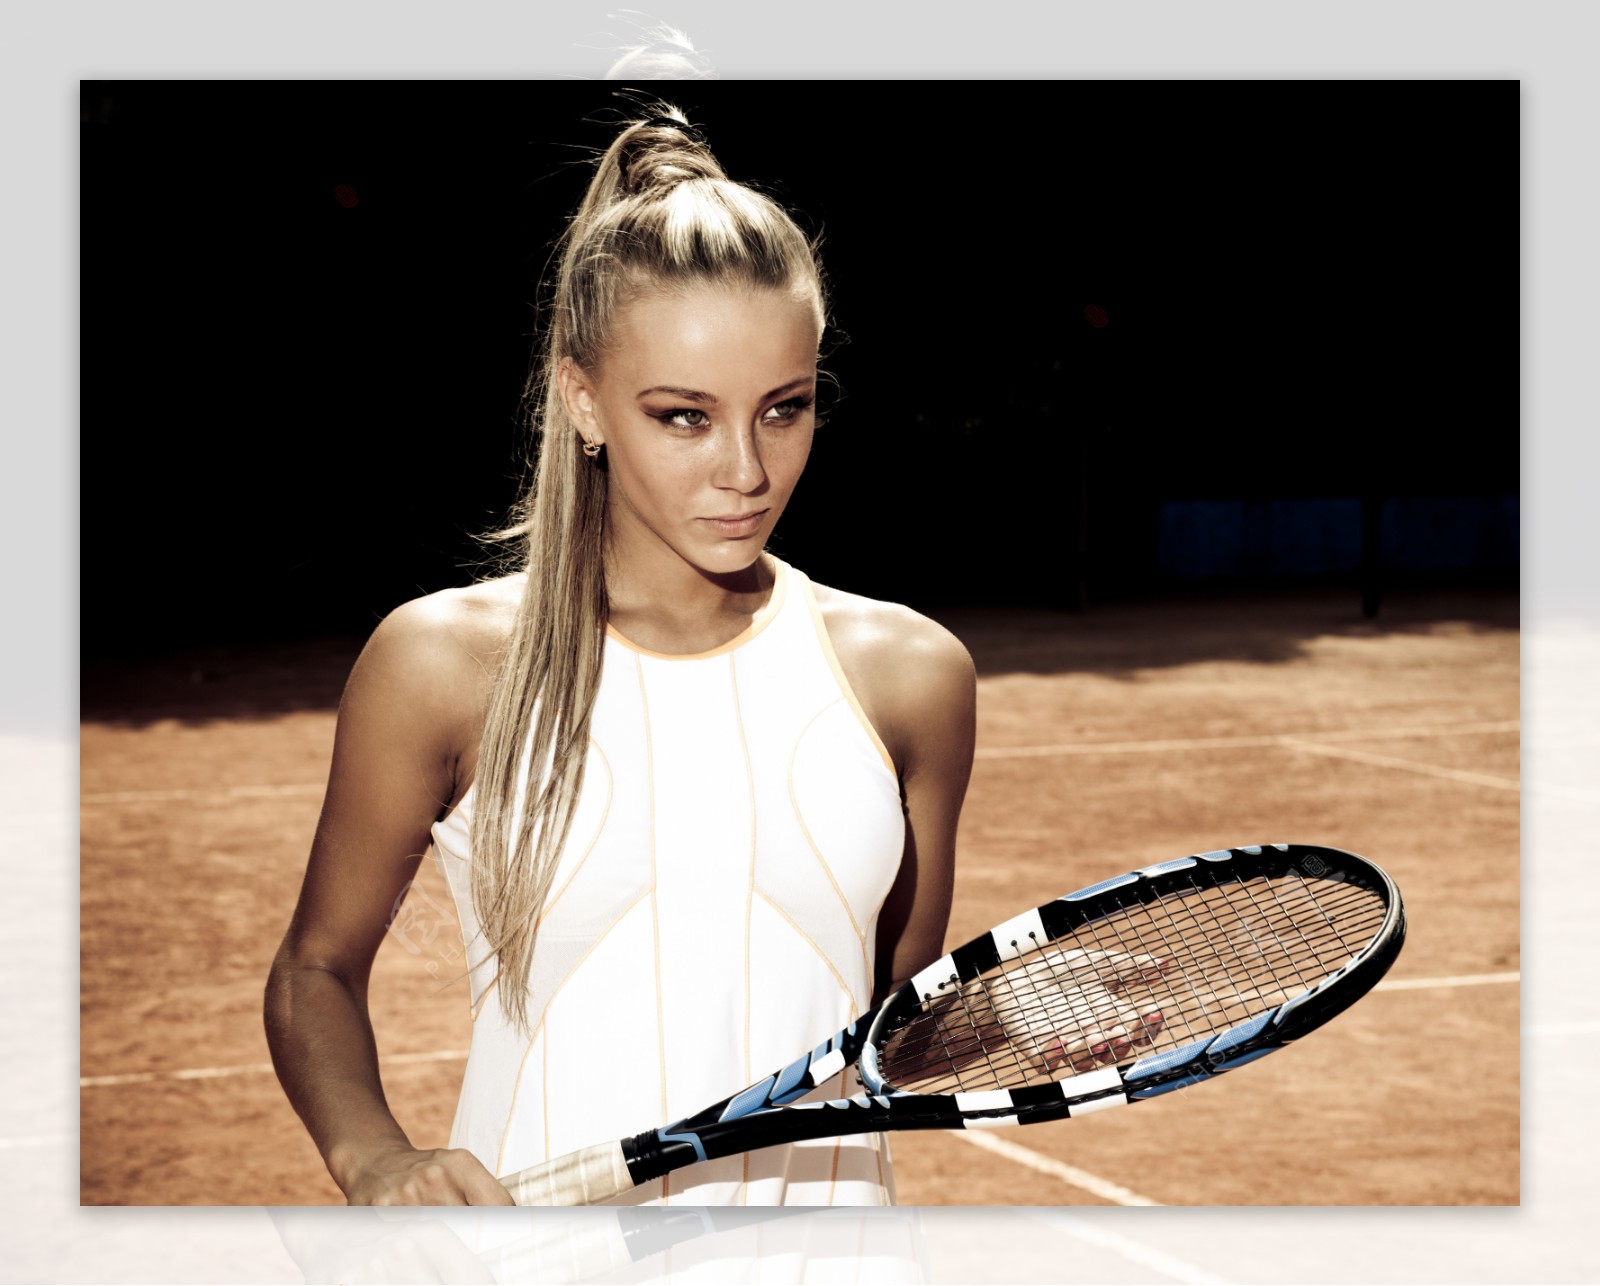 拿着网球球拍的美女图片